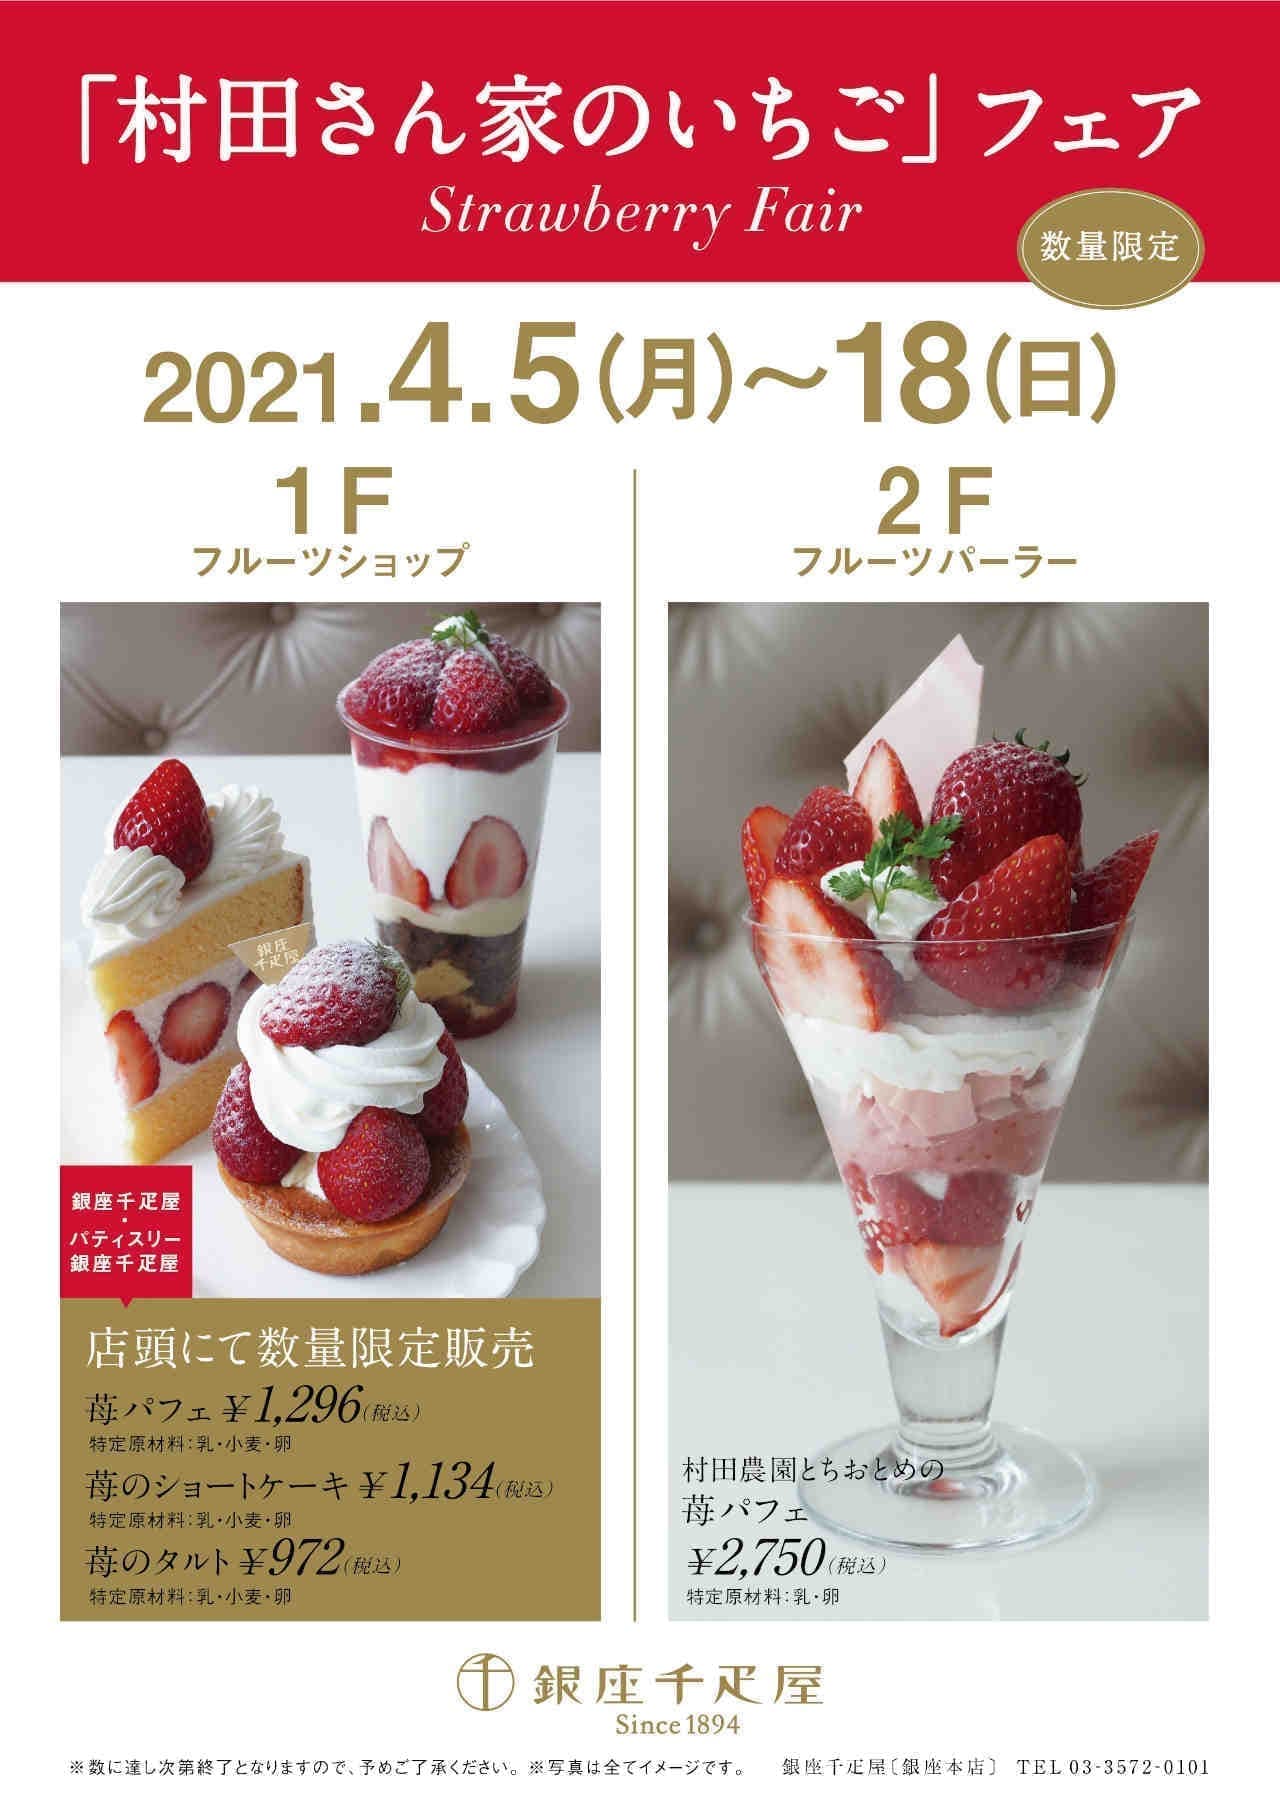 Ginza Senbiya “Murata-san's Strawberry Fair”